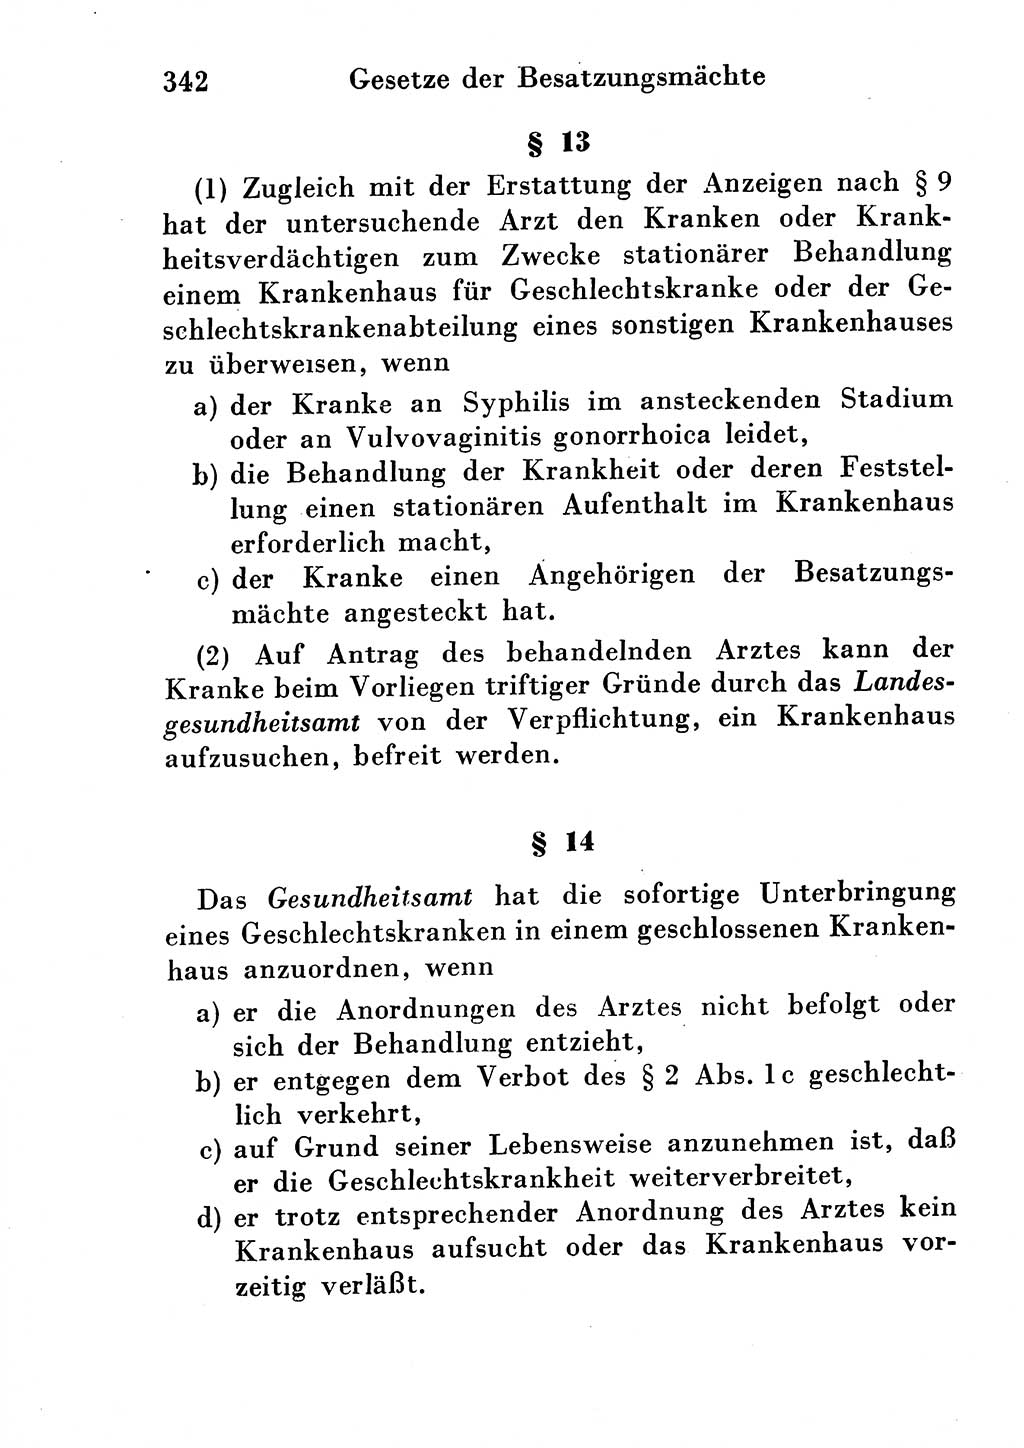 Strafgesetzbuch (StGB) und andere Strafgesetze [Deutsche Demokratische Republik (DDR)] 1954, Seite 342 (StGB Strafges. DDR 1954, S. 342)